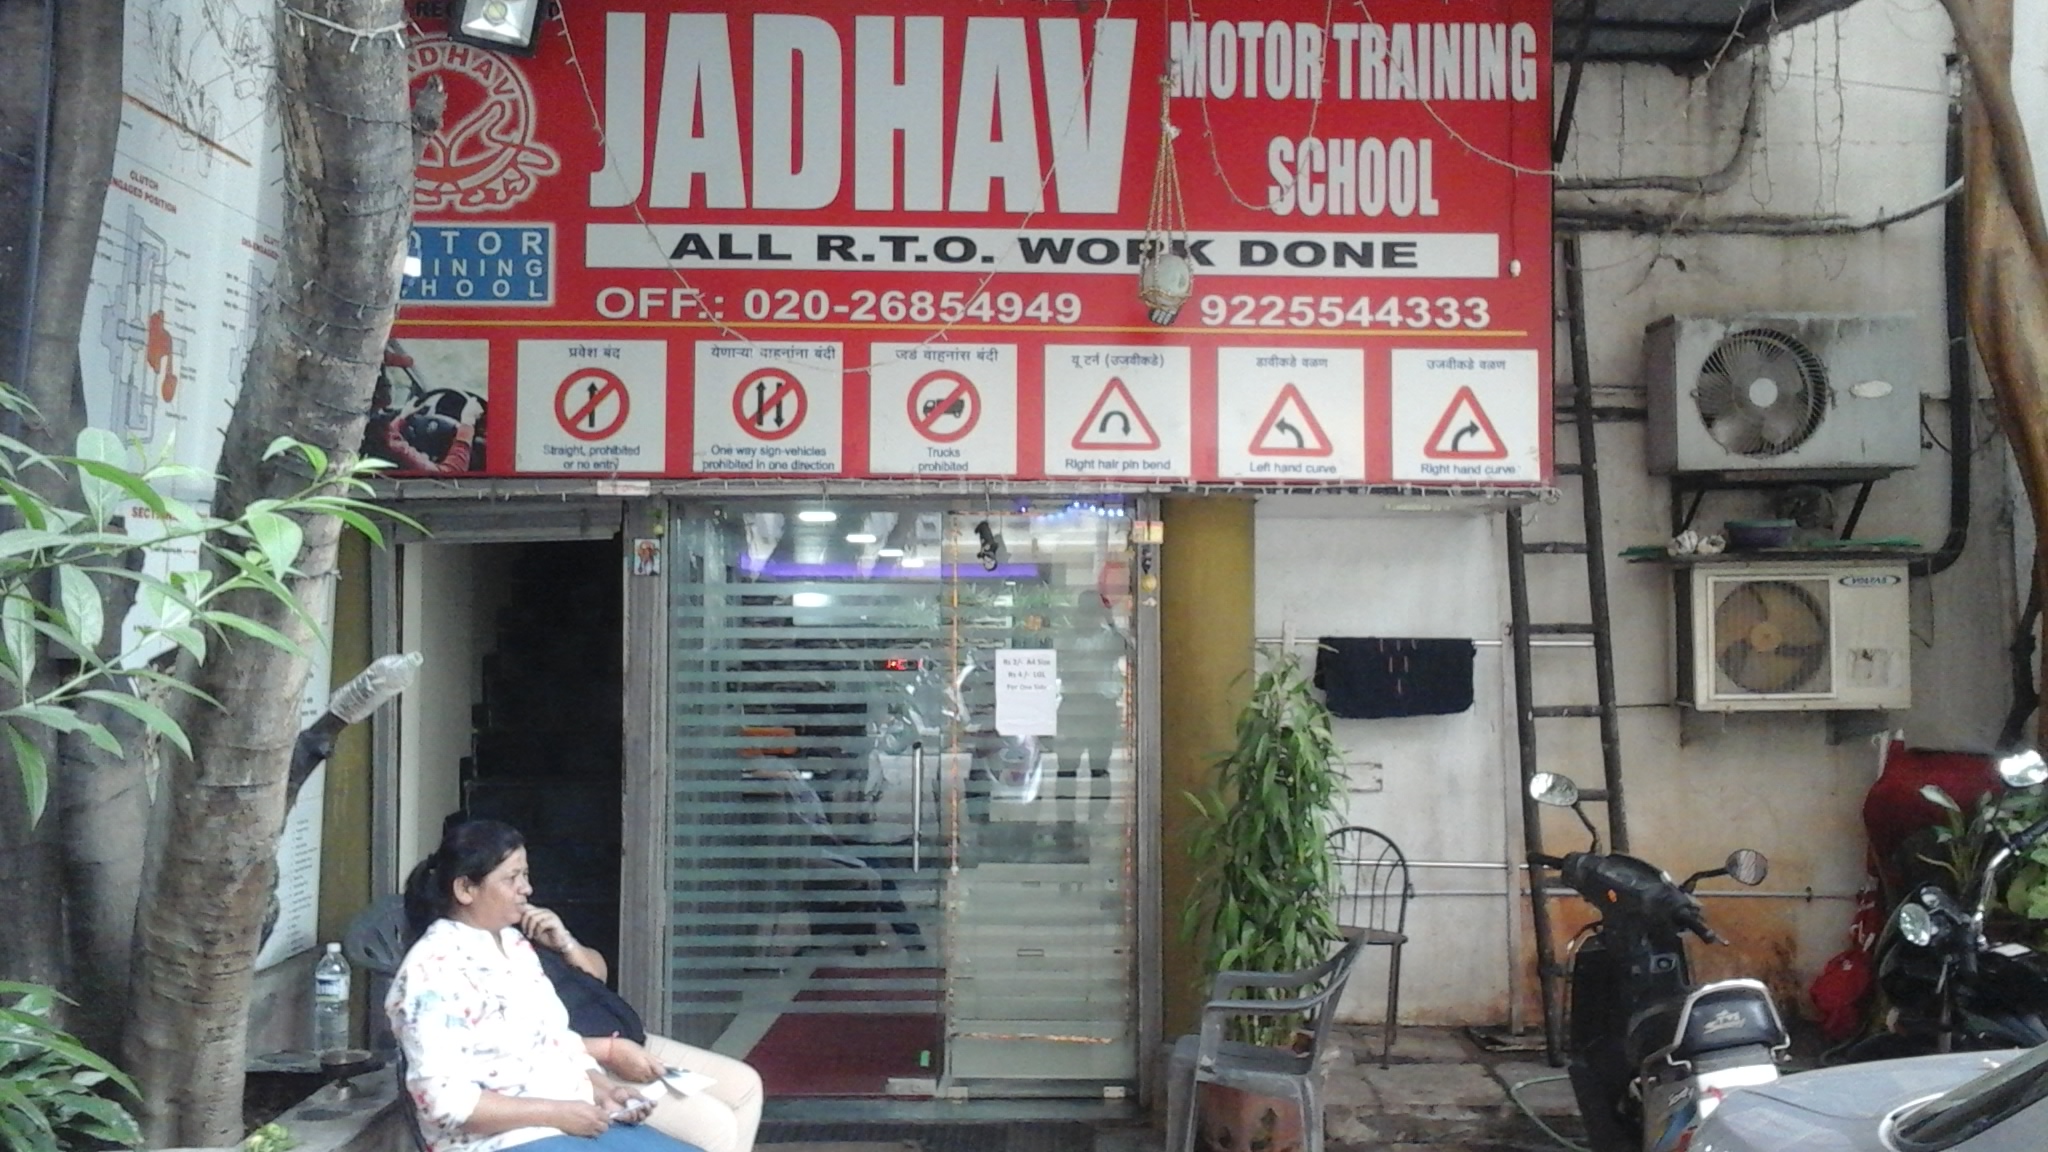 Jadhav Motor Training School